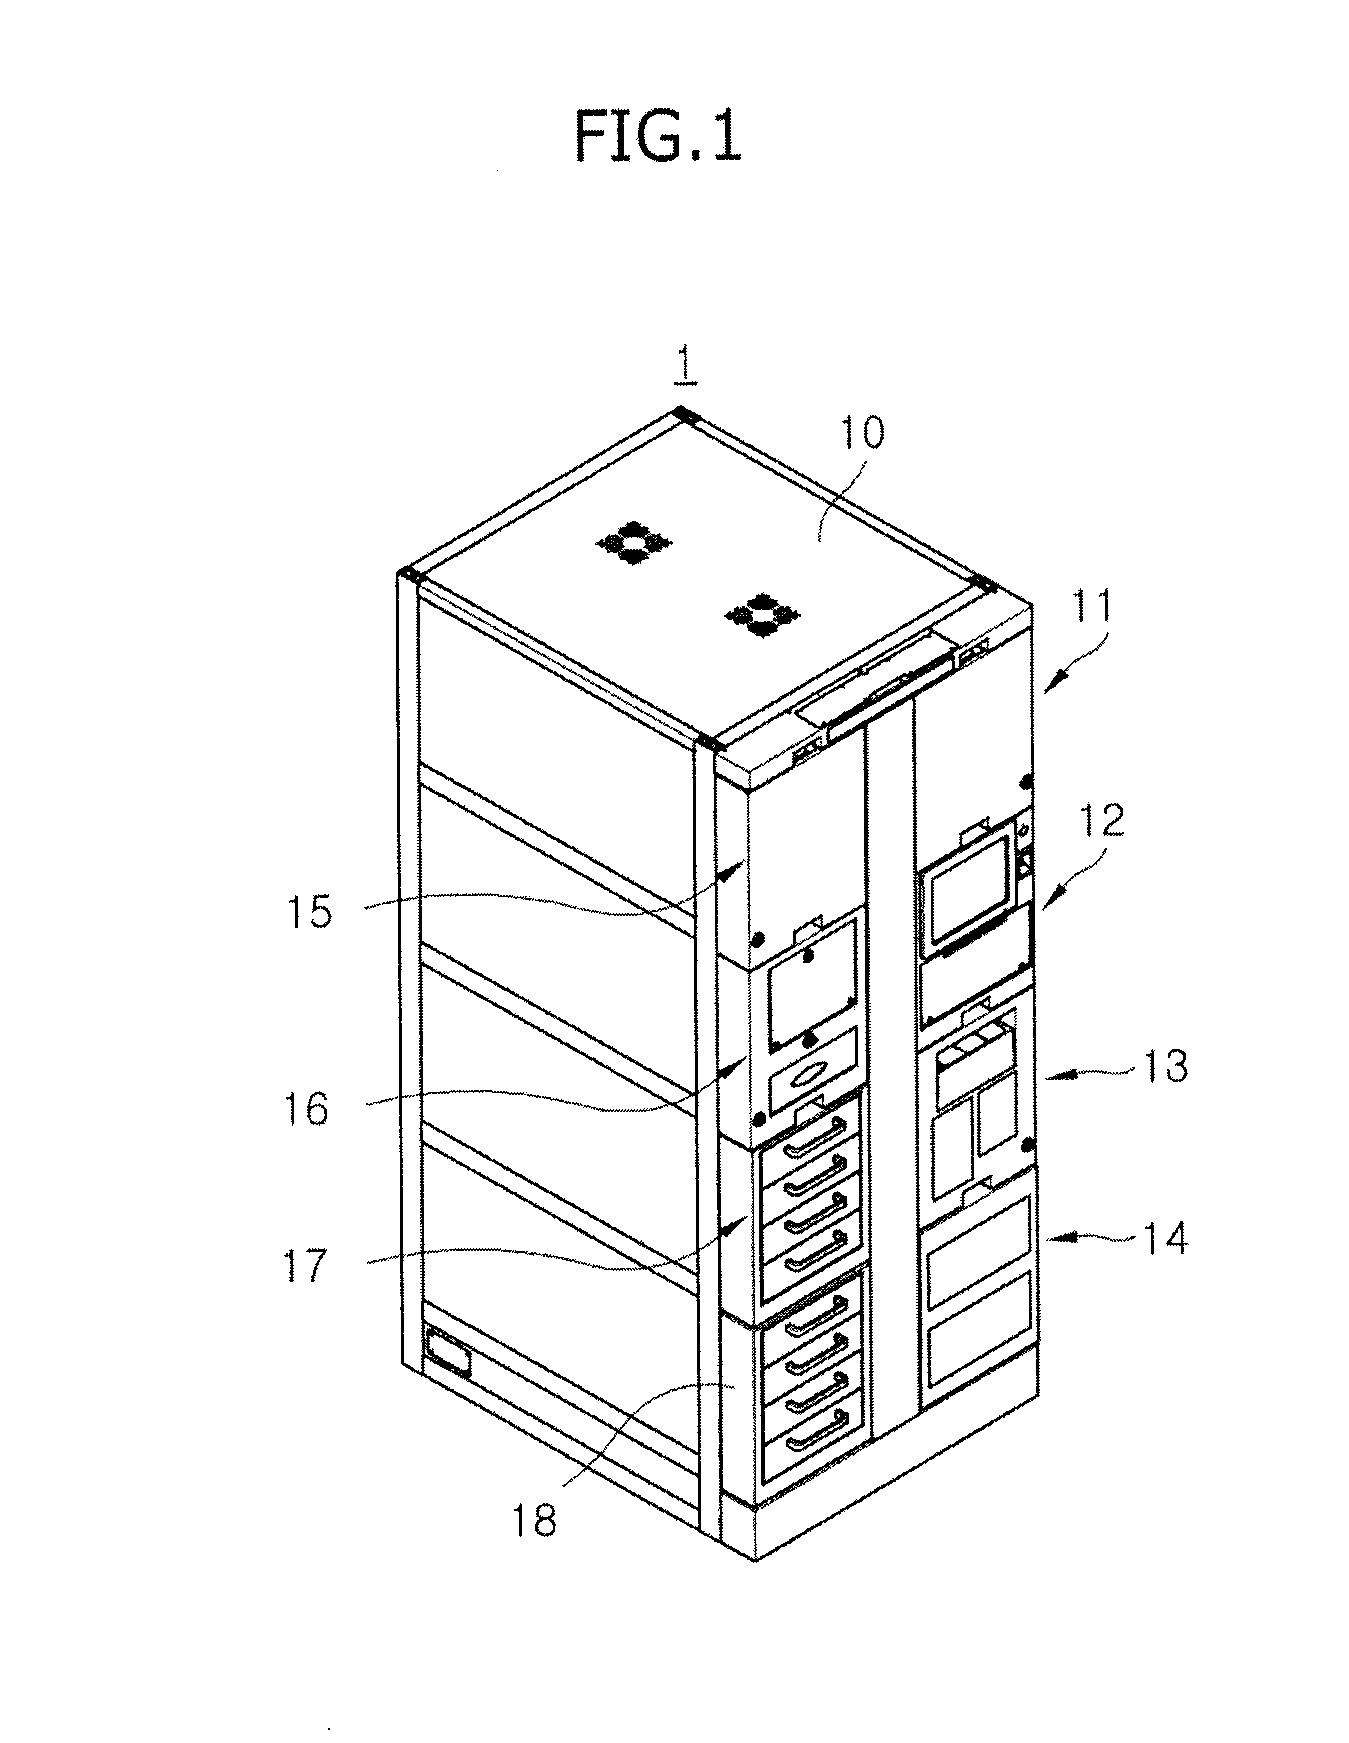 Medicine storage apparatus